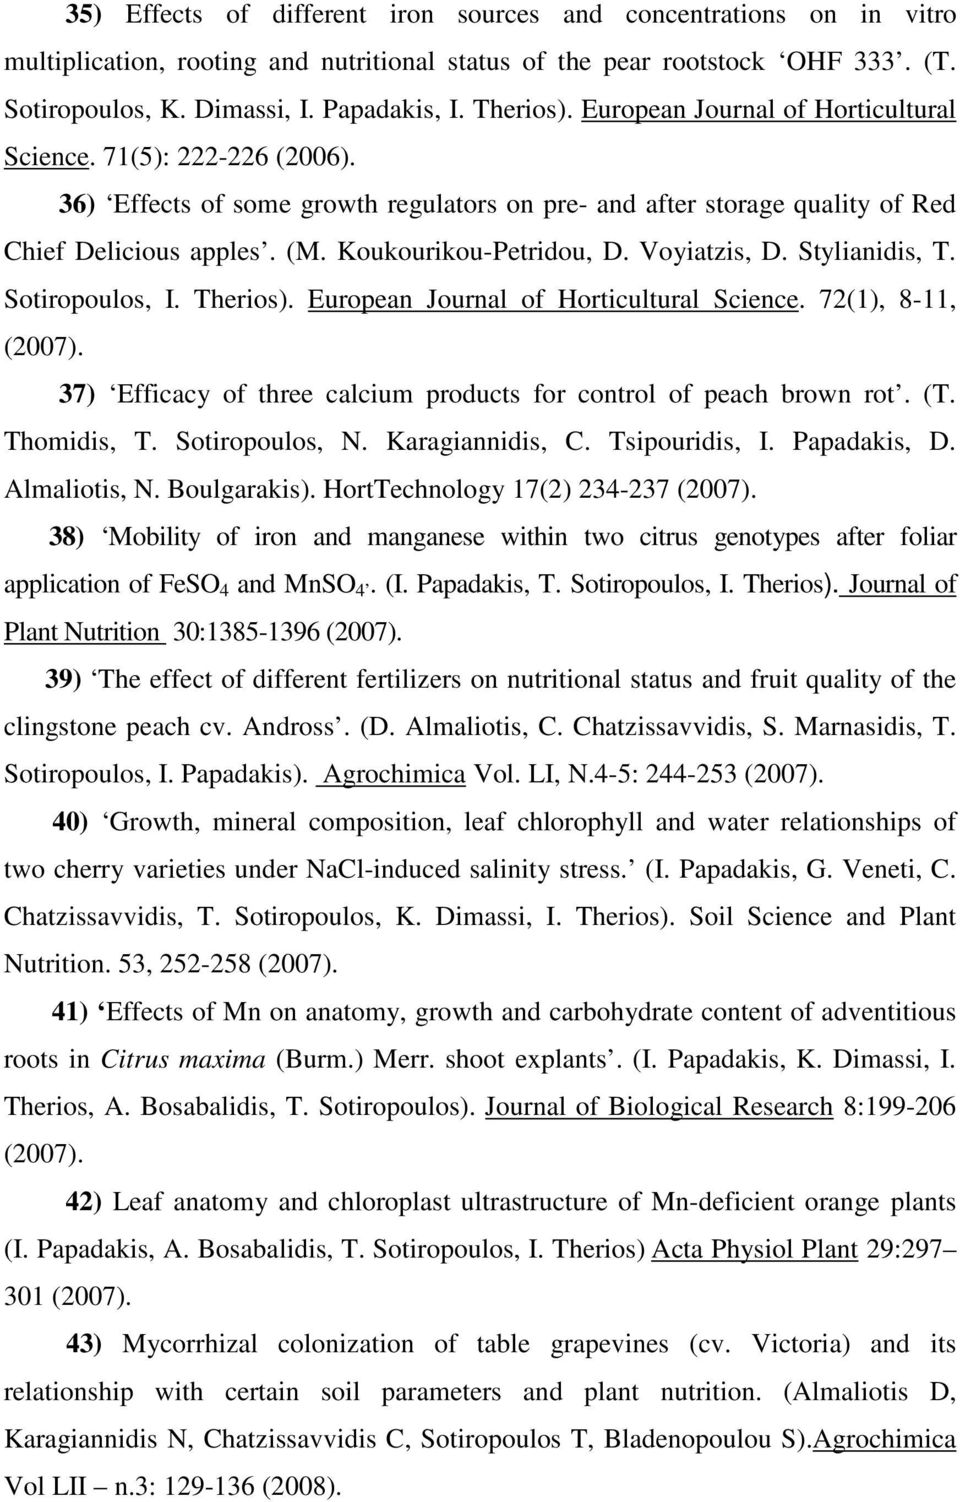 Koukourikou-Petridou, D. Voyiatzis, D. Stylianidis, T. Sotiropoulos, I. Therios). European Journal of Horticultural Science. 72(1), 8-11, (2007).